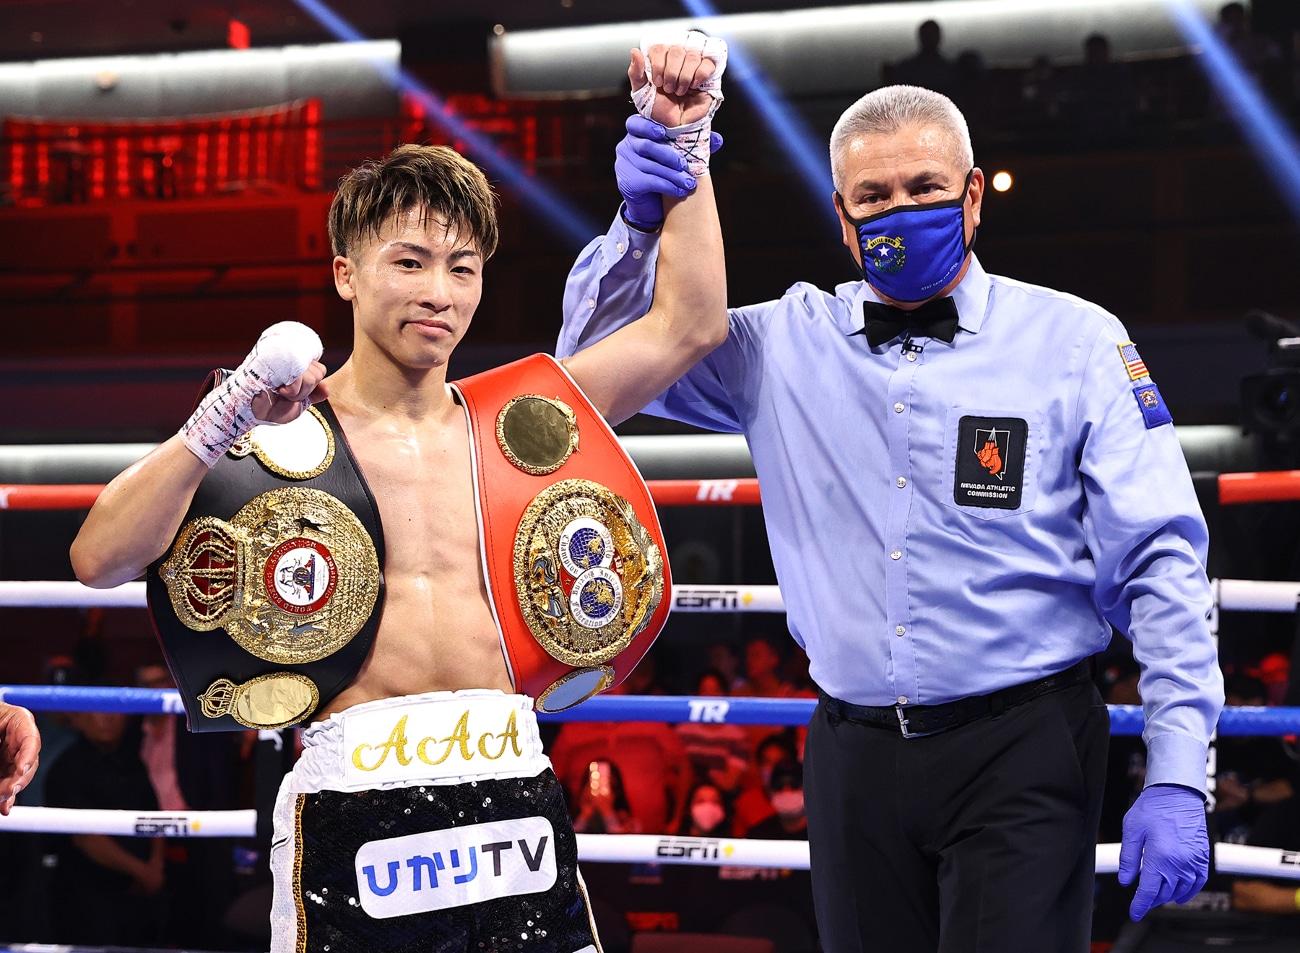 Michael Dasmarinas, Naoya Inoue, Nonito Donaire boxing image / photo